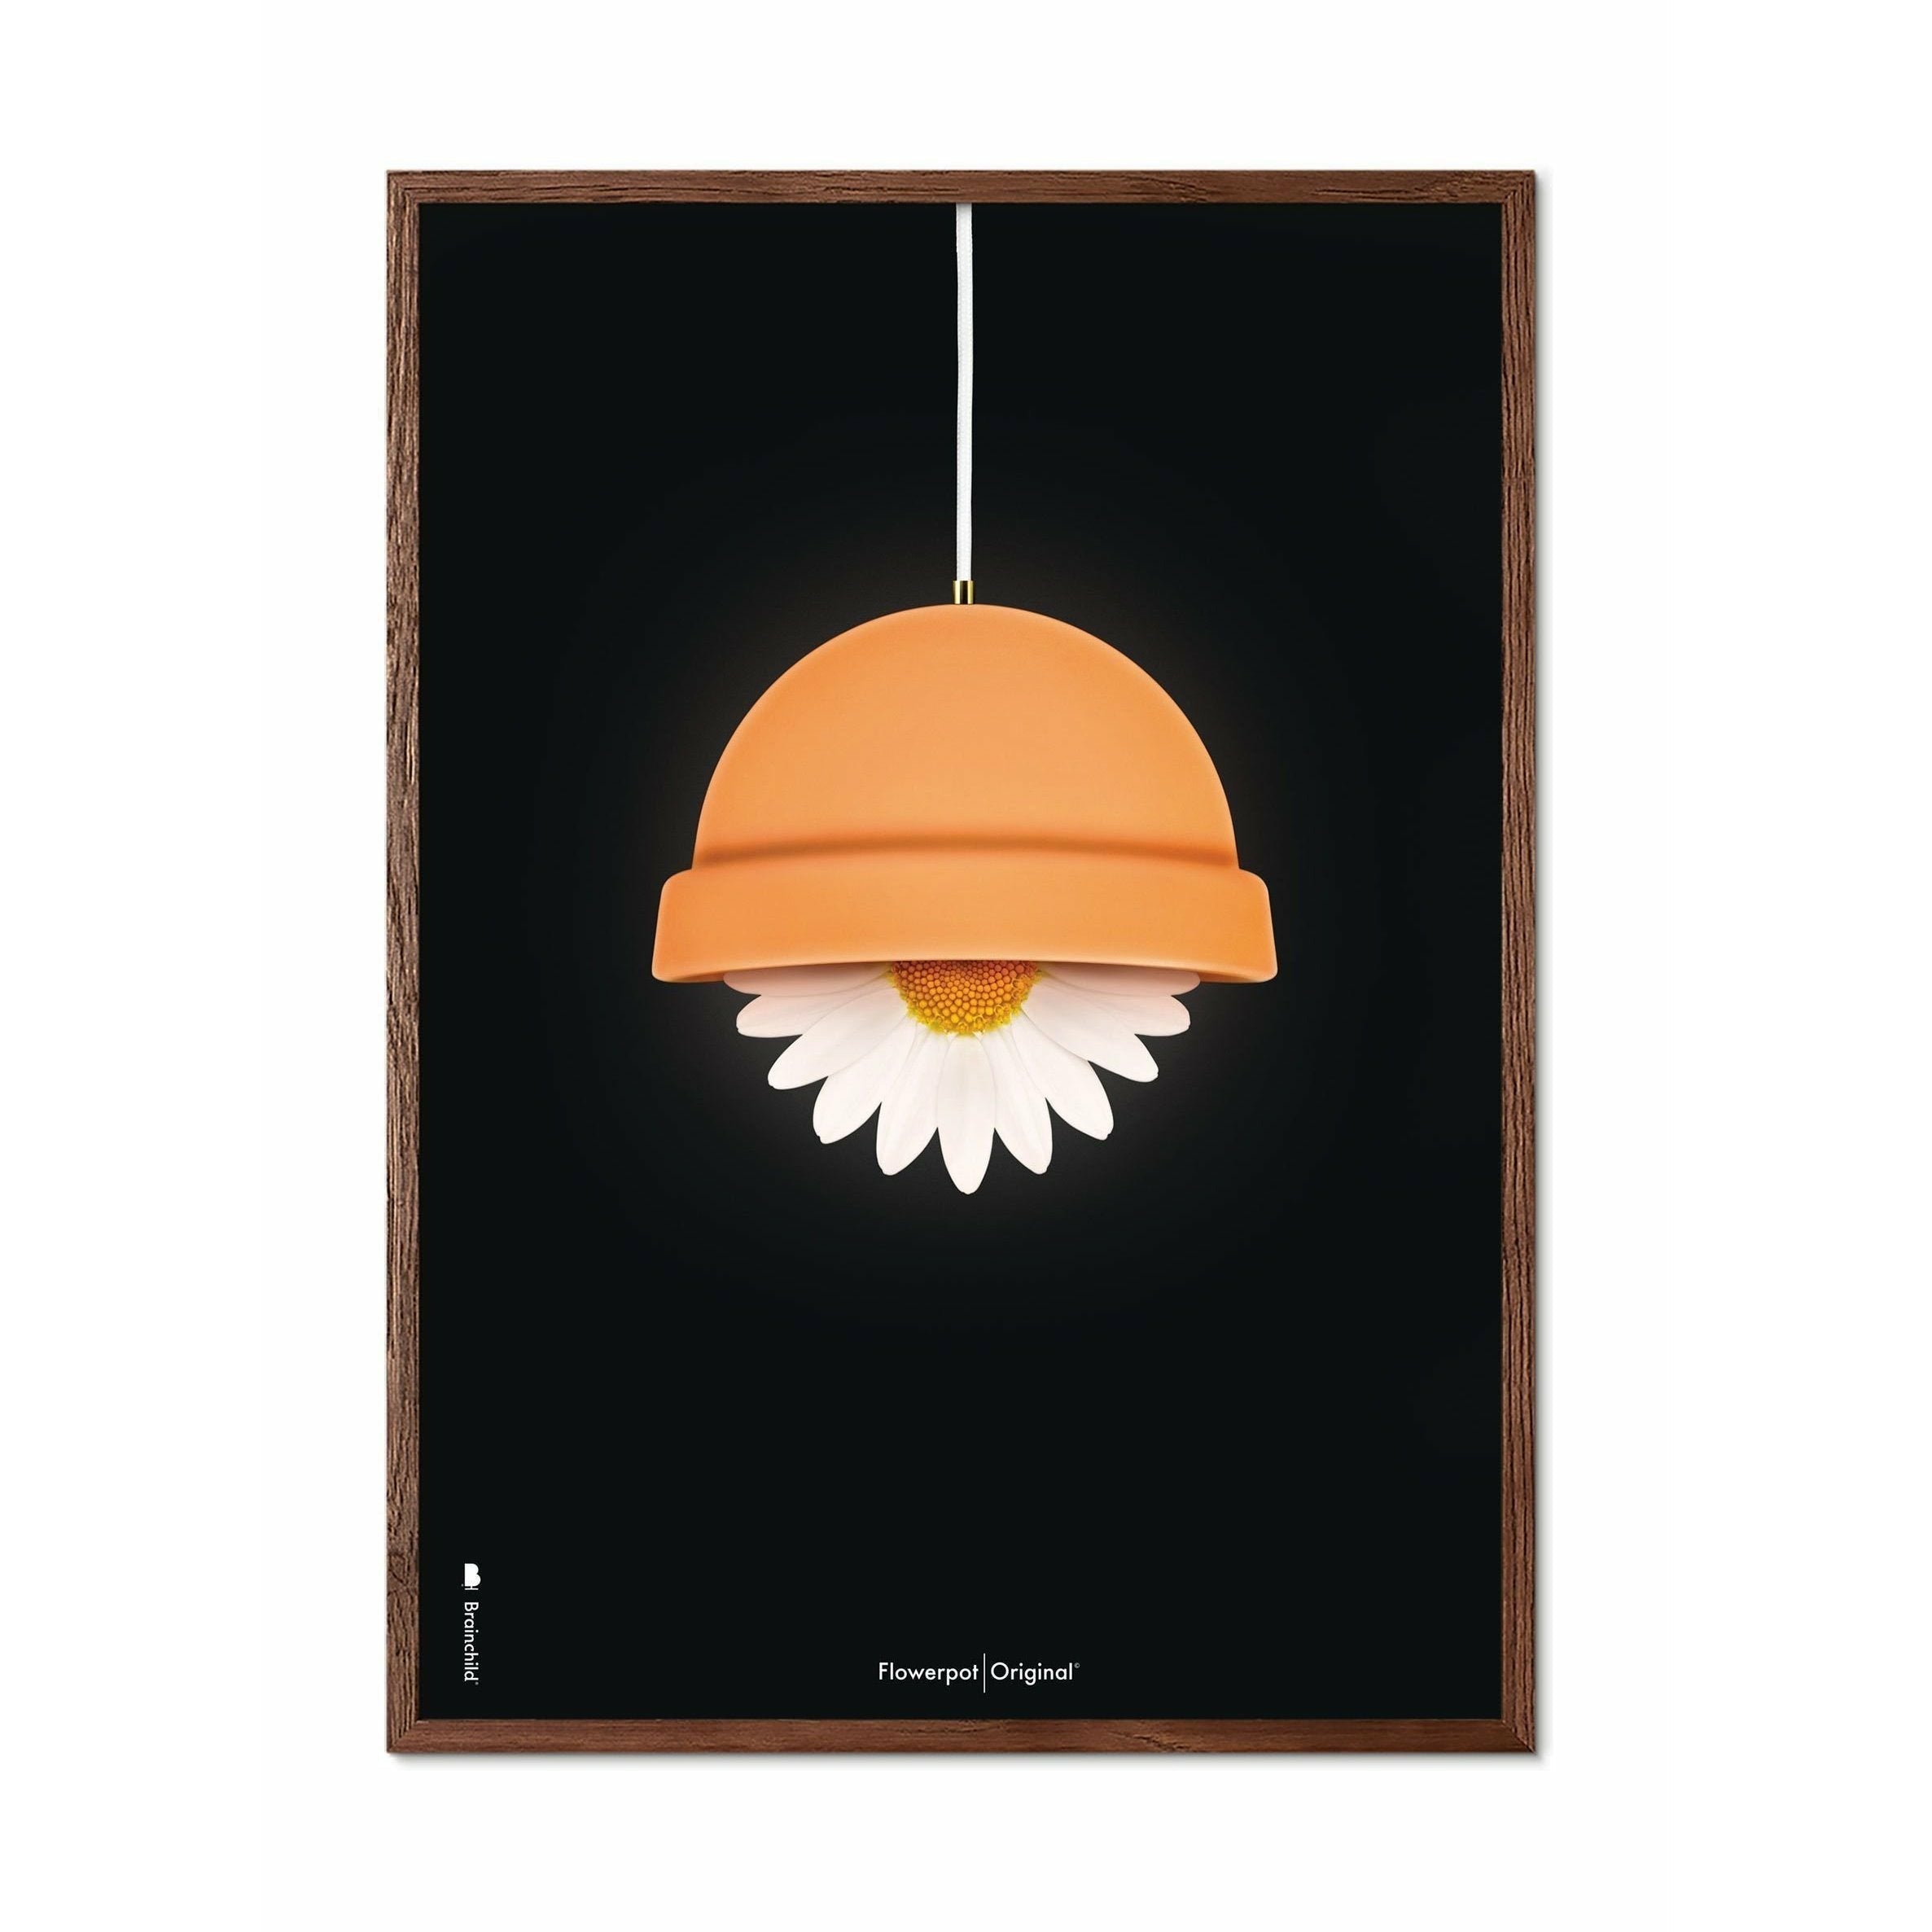 Brainchild Flowerpot Classic Poster, Dark Wood Frame 70x100 cm, svart bakgrund